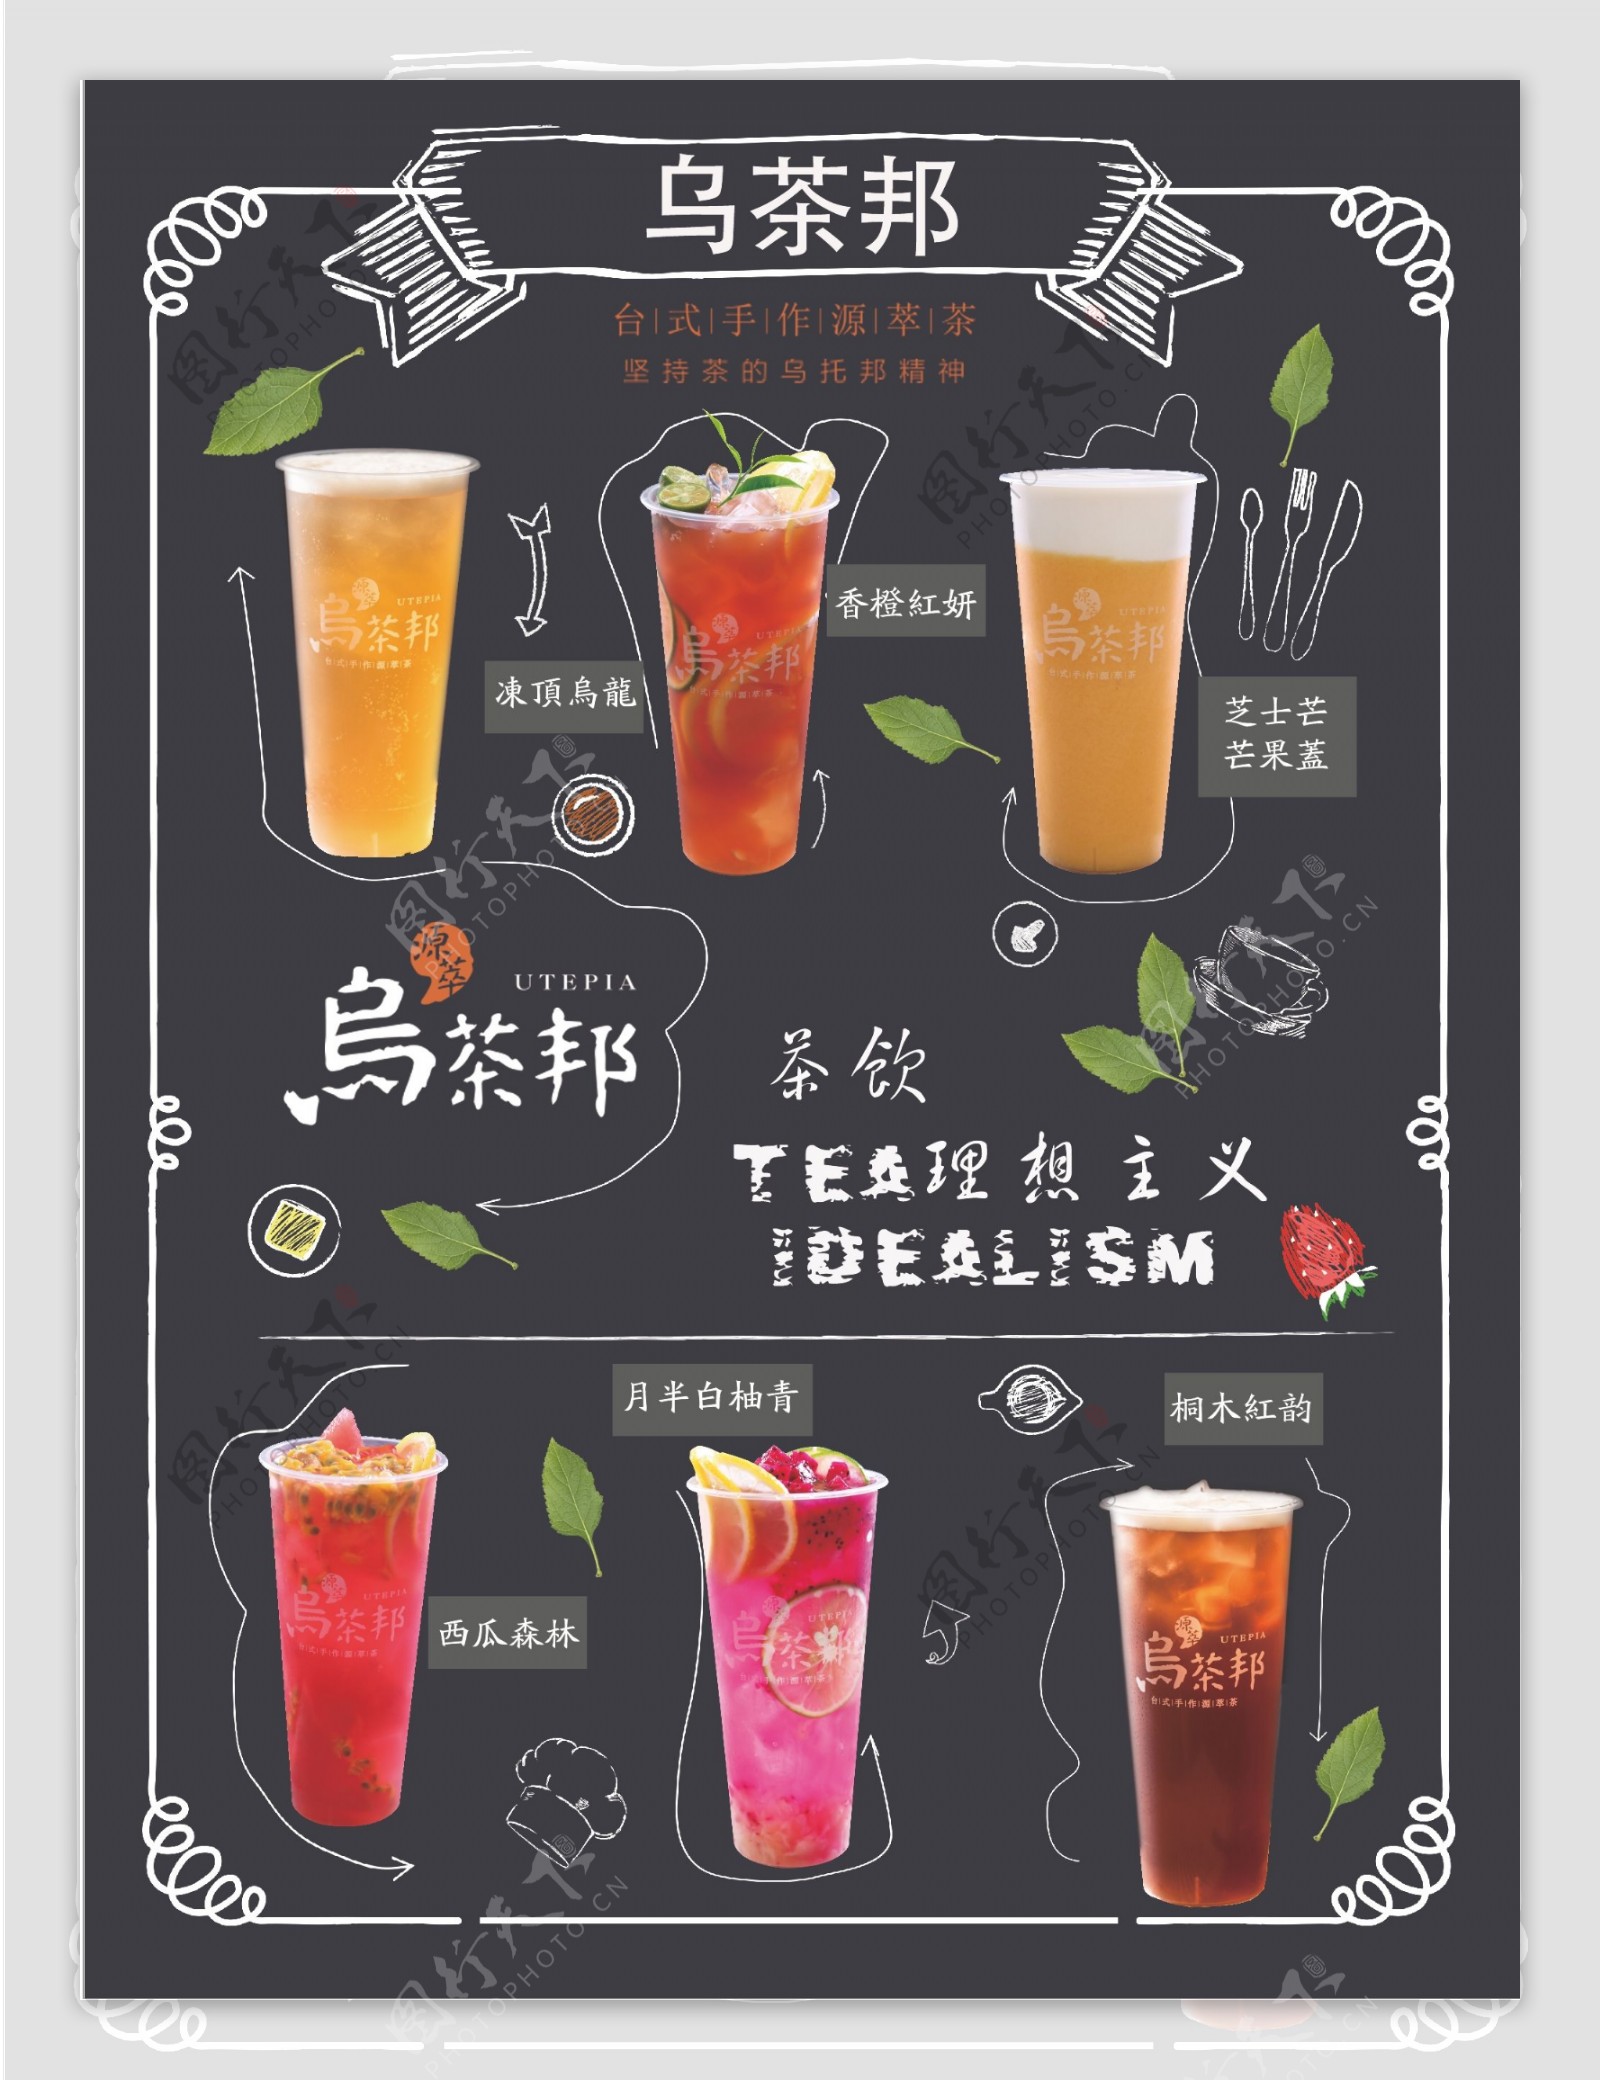 乌茶邦奶茶店海报